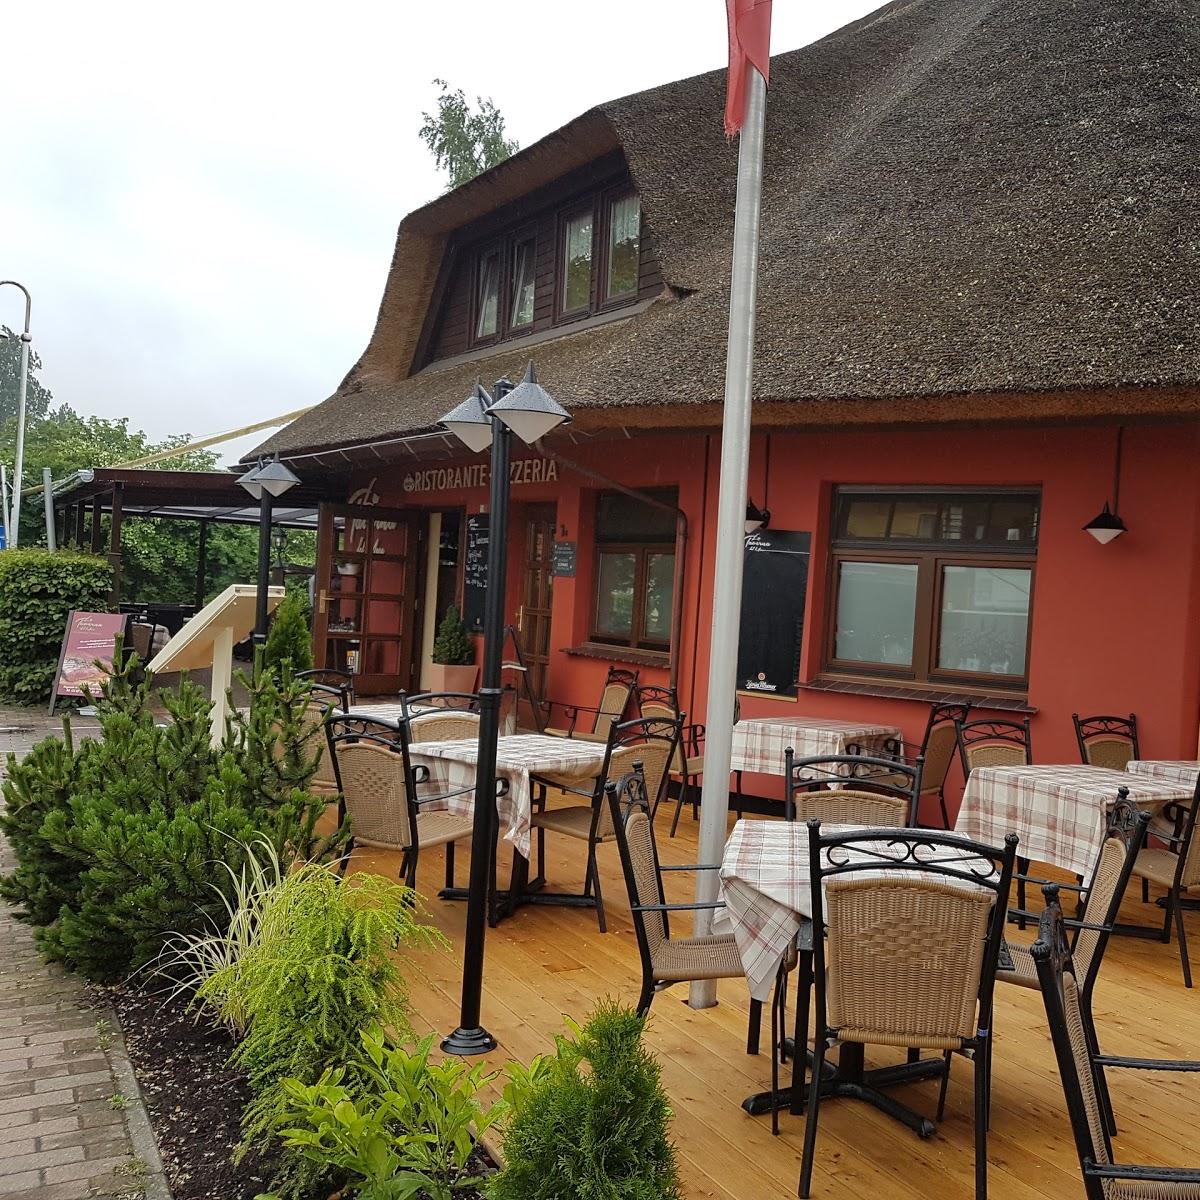 Restaurant "La Taverna Del Mare" in Prerow